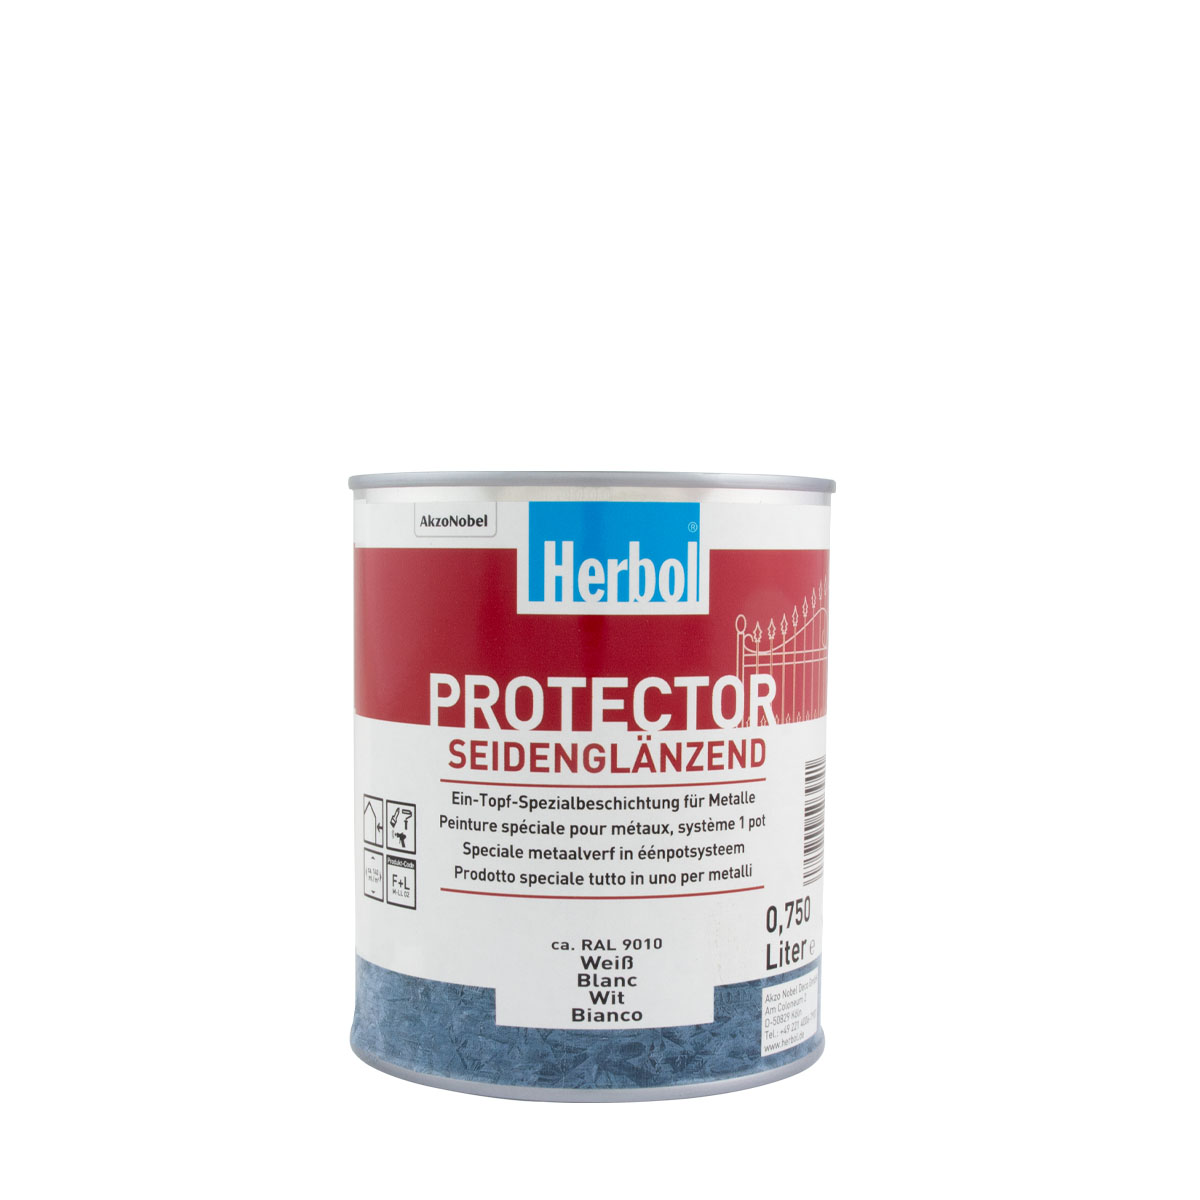 Herbol Protector weiss 750ml, seidenglänzend ca. RAL 9010; Metallschutzlack